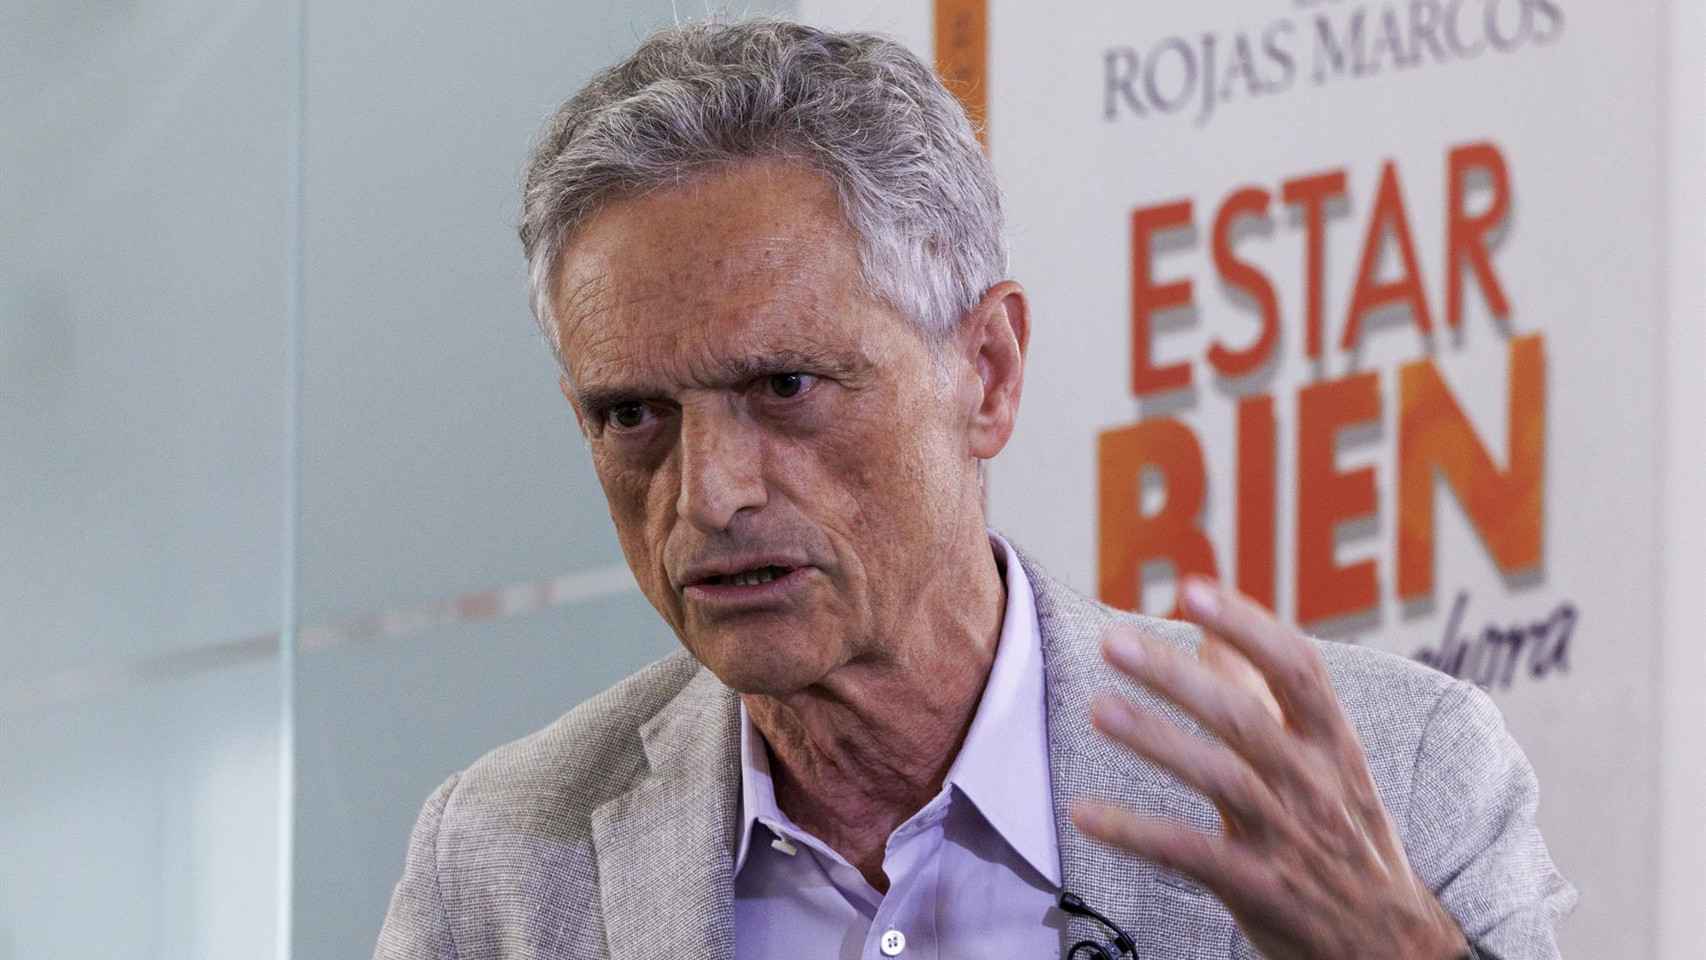 Rojas Marcos durante la presentación de su libro en Madrid.